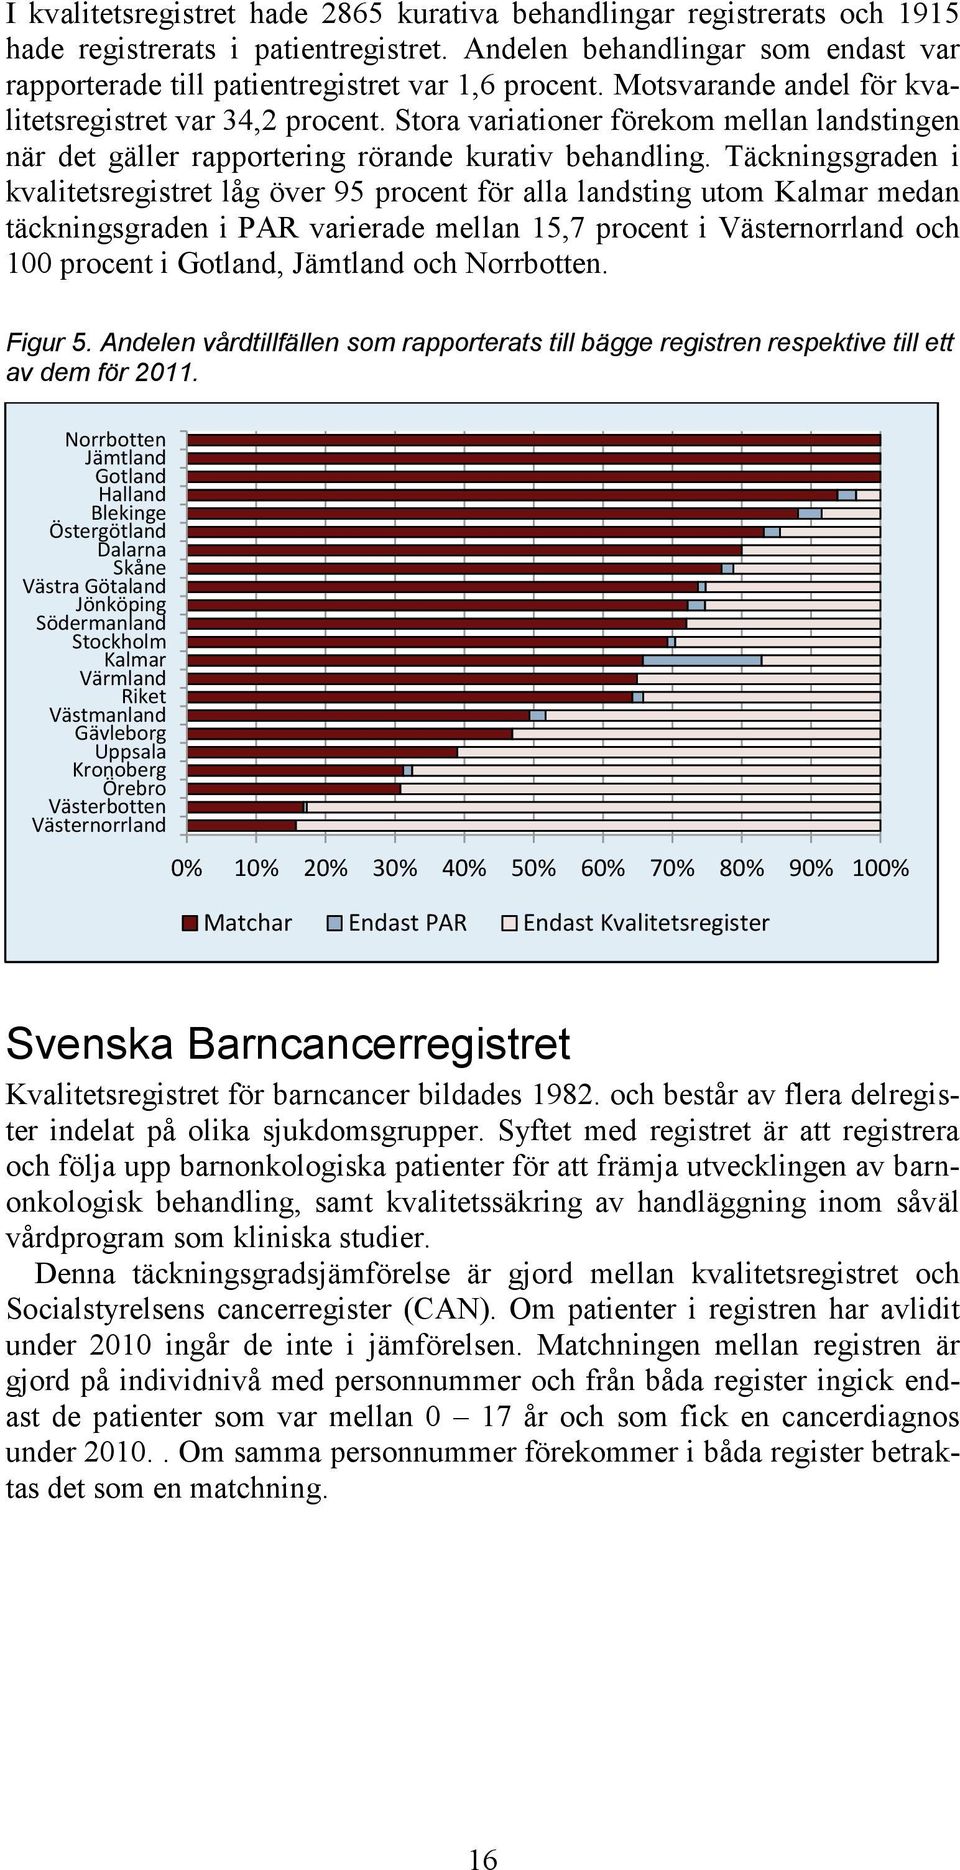 Täckningsgraden i kvalitetsregistret låg över 95 procent för alla landsting utom Kalmar medan täckningsgraden i PAR varierade mellan 15,7 procent i Västernorrland och 100 procent i Gotland, Jämtland